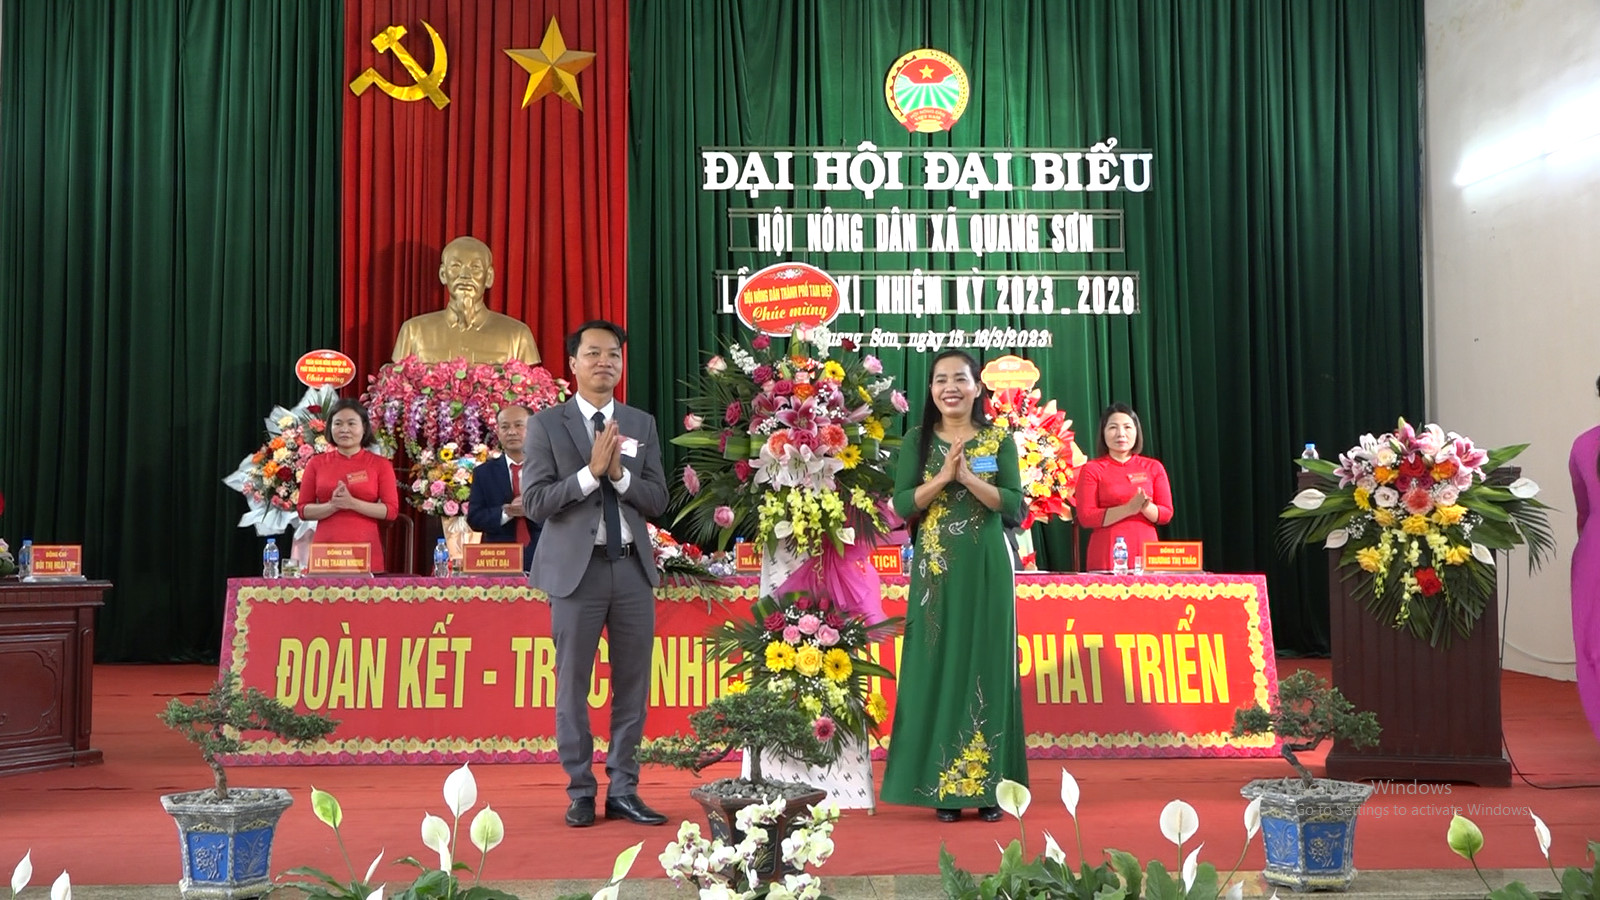 Hội Nông dân xã Quang Sơn tổ chức Đại hội Đại biểu Hội Nông dân xã lần thứ XI, nhiệm kỳ 2023-2028